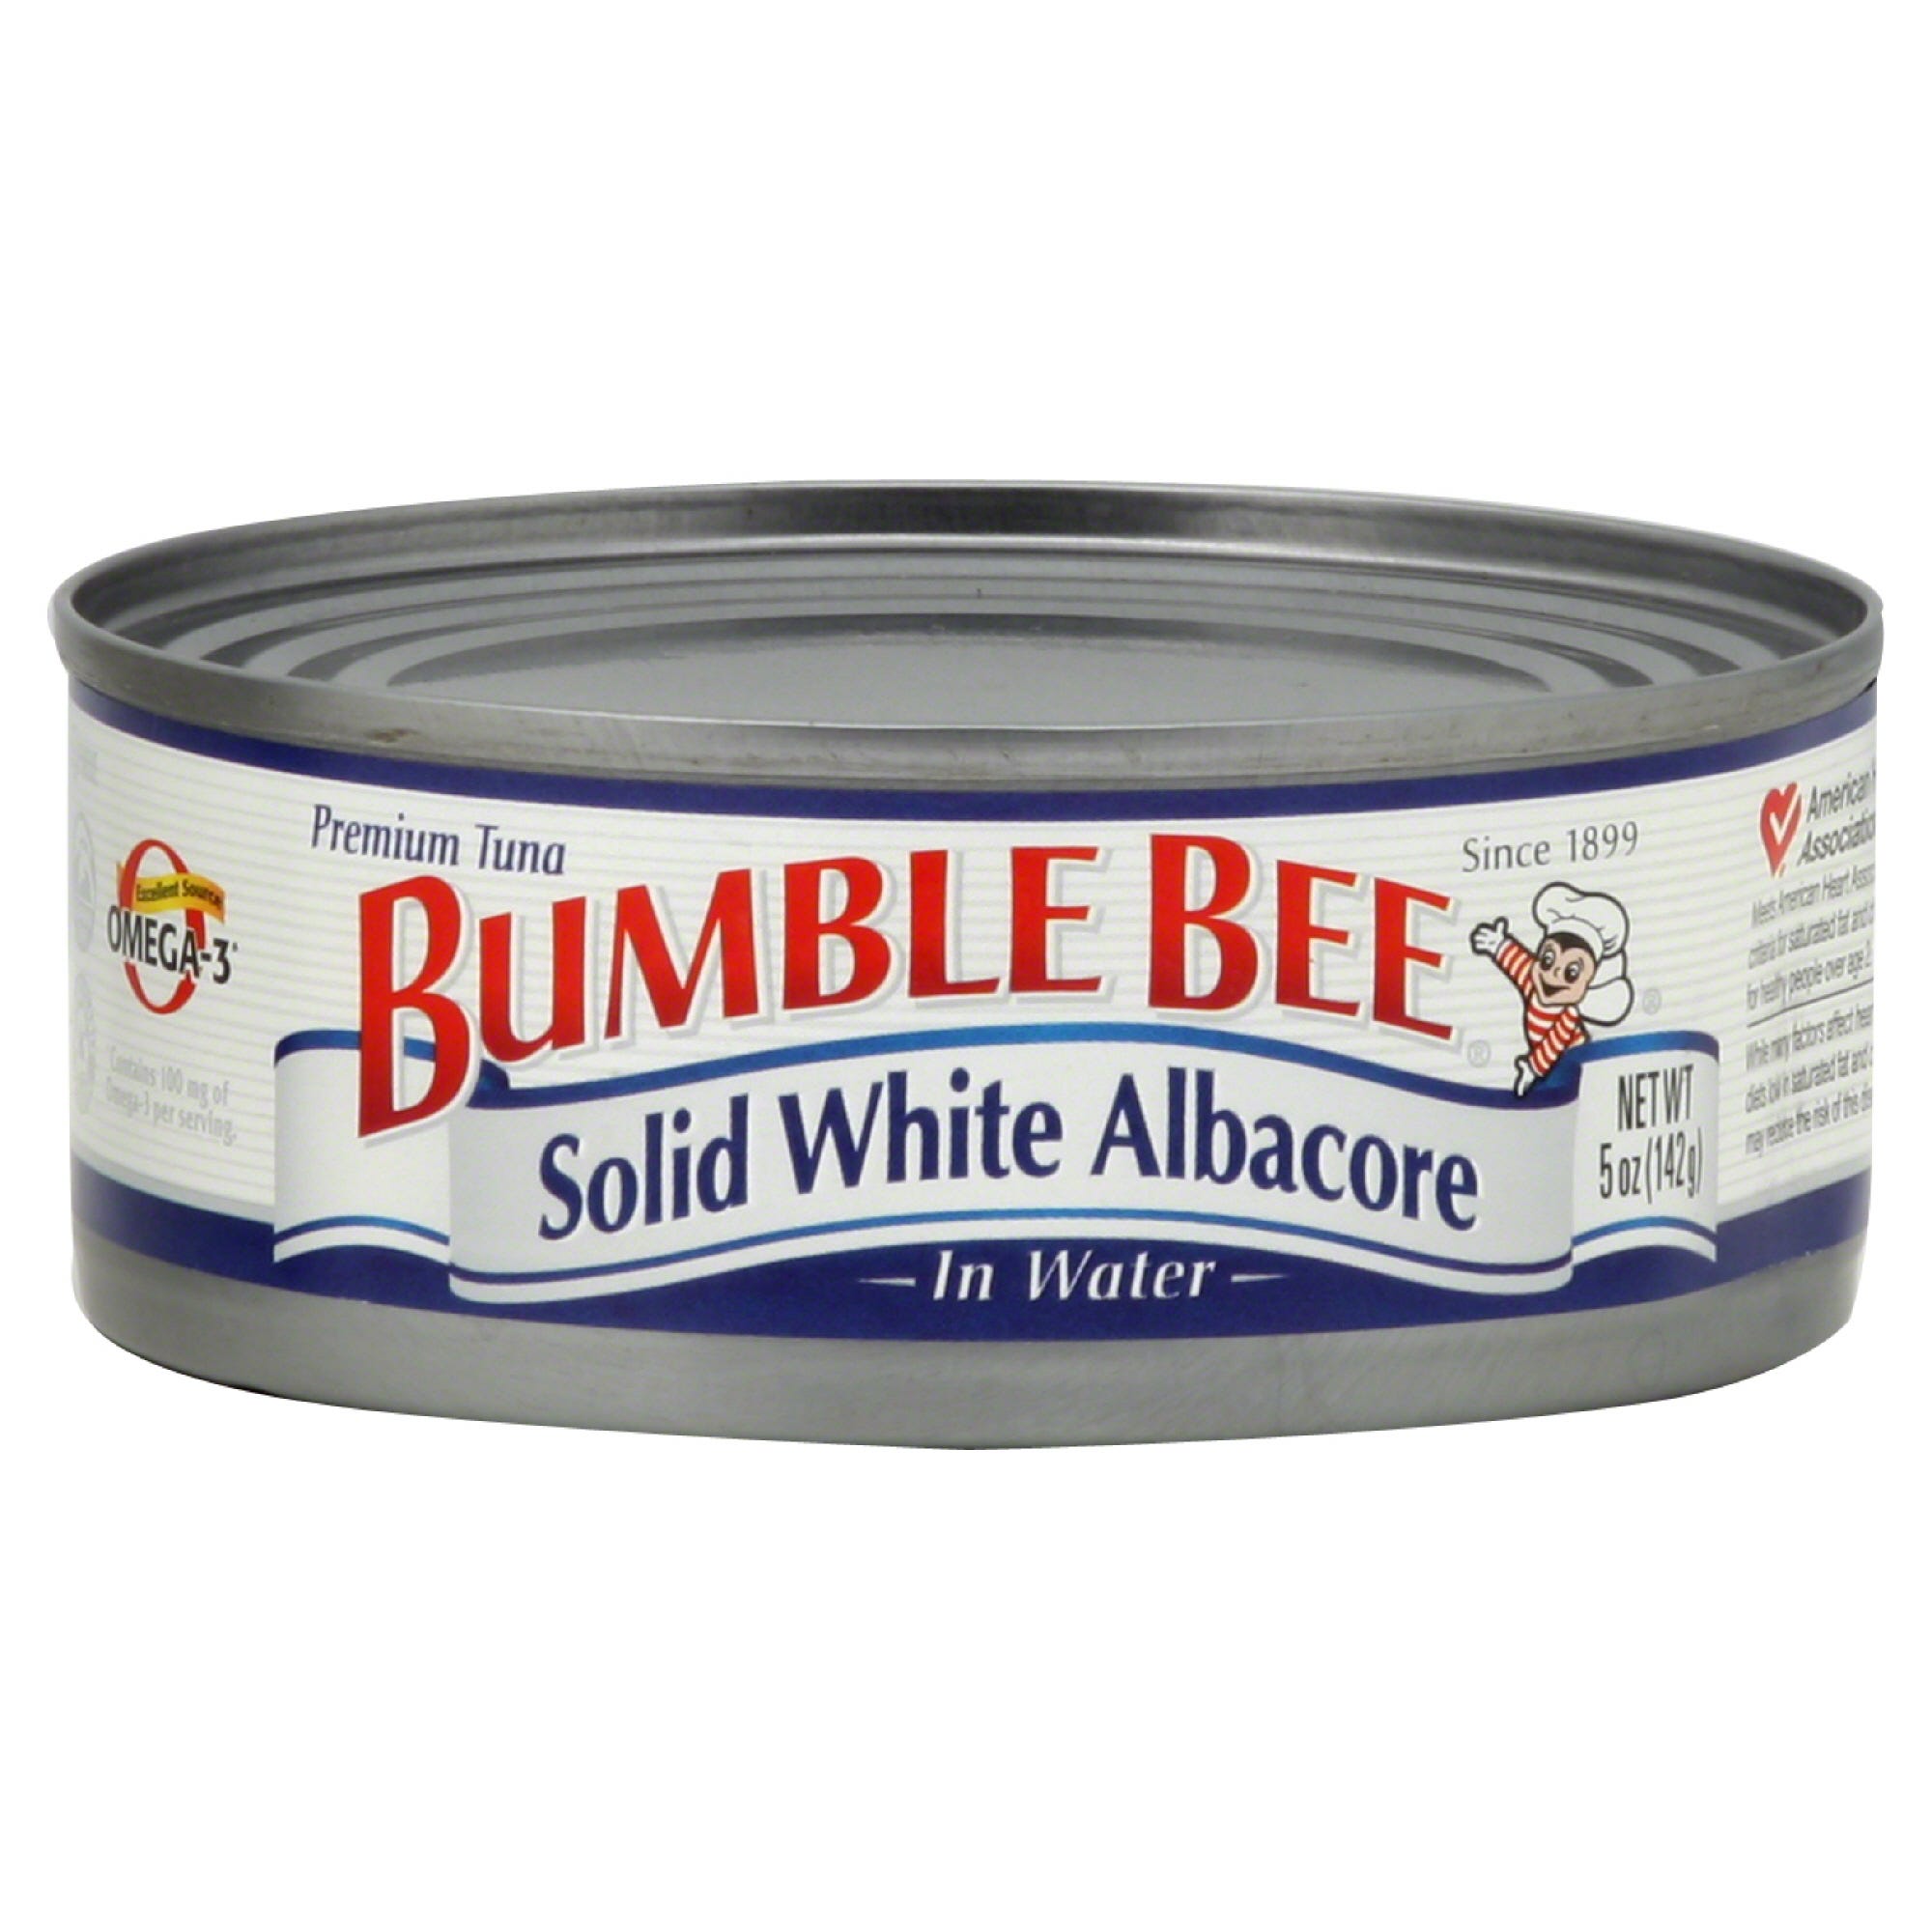 Bumble Bee Tuna, Premium Solid White Albacore - 5 oz